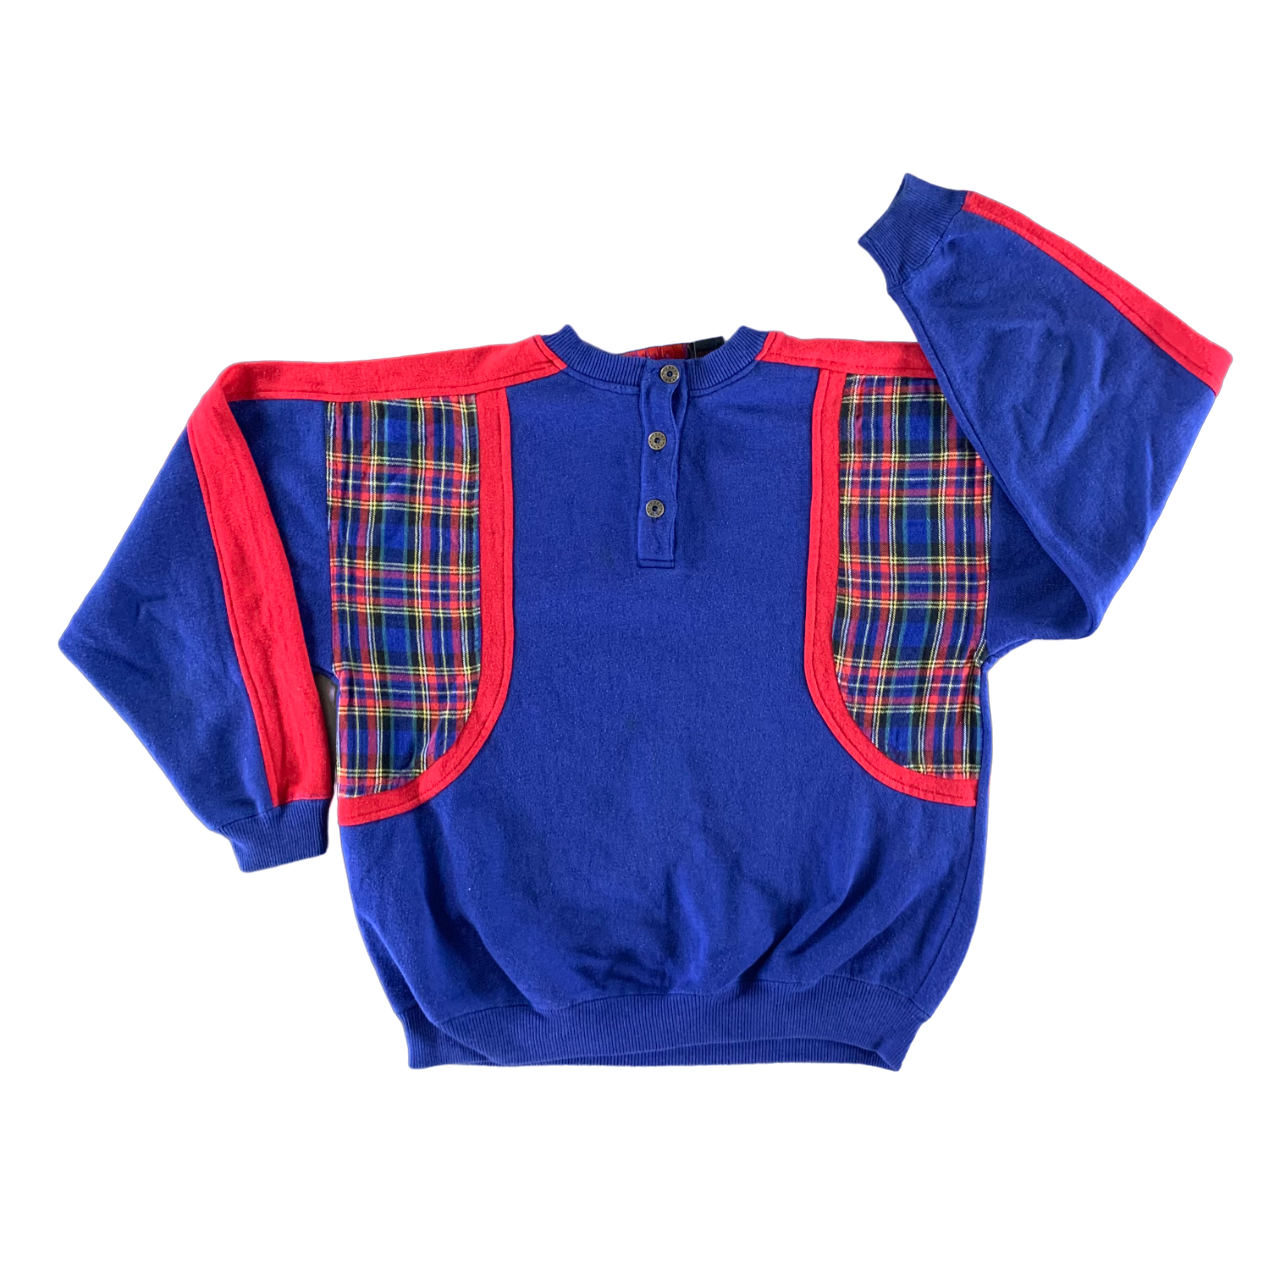 Vintage 1990s Plaid Sweatshirt size Medium